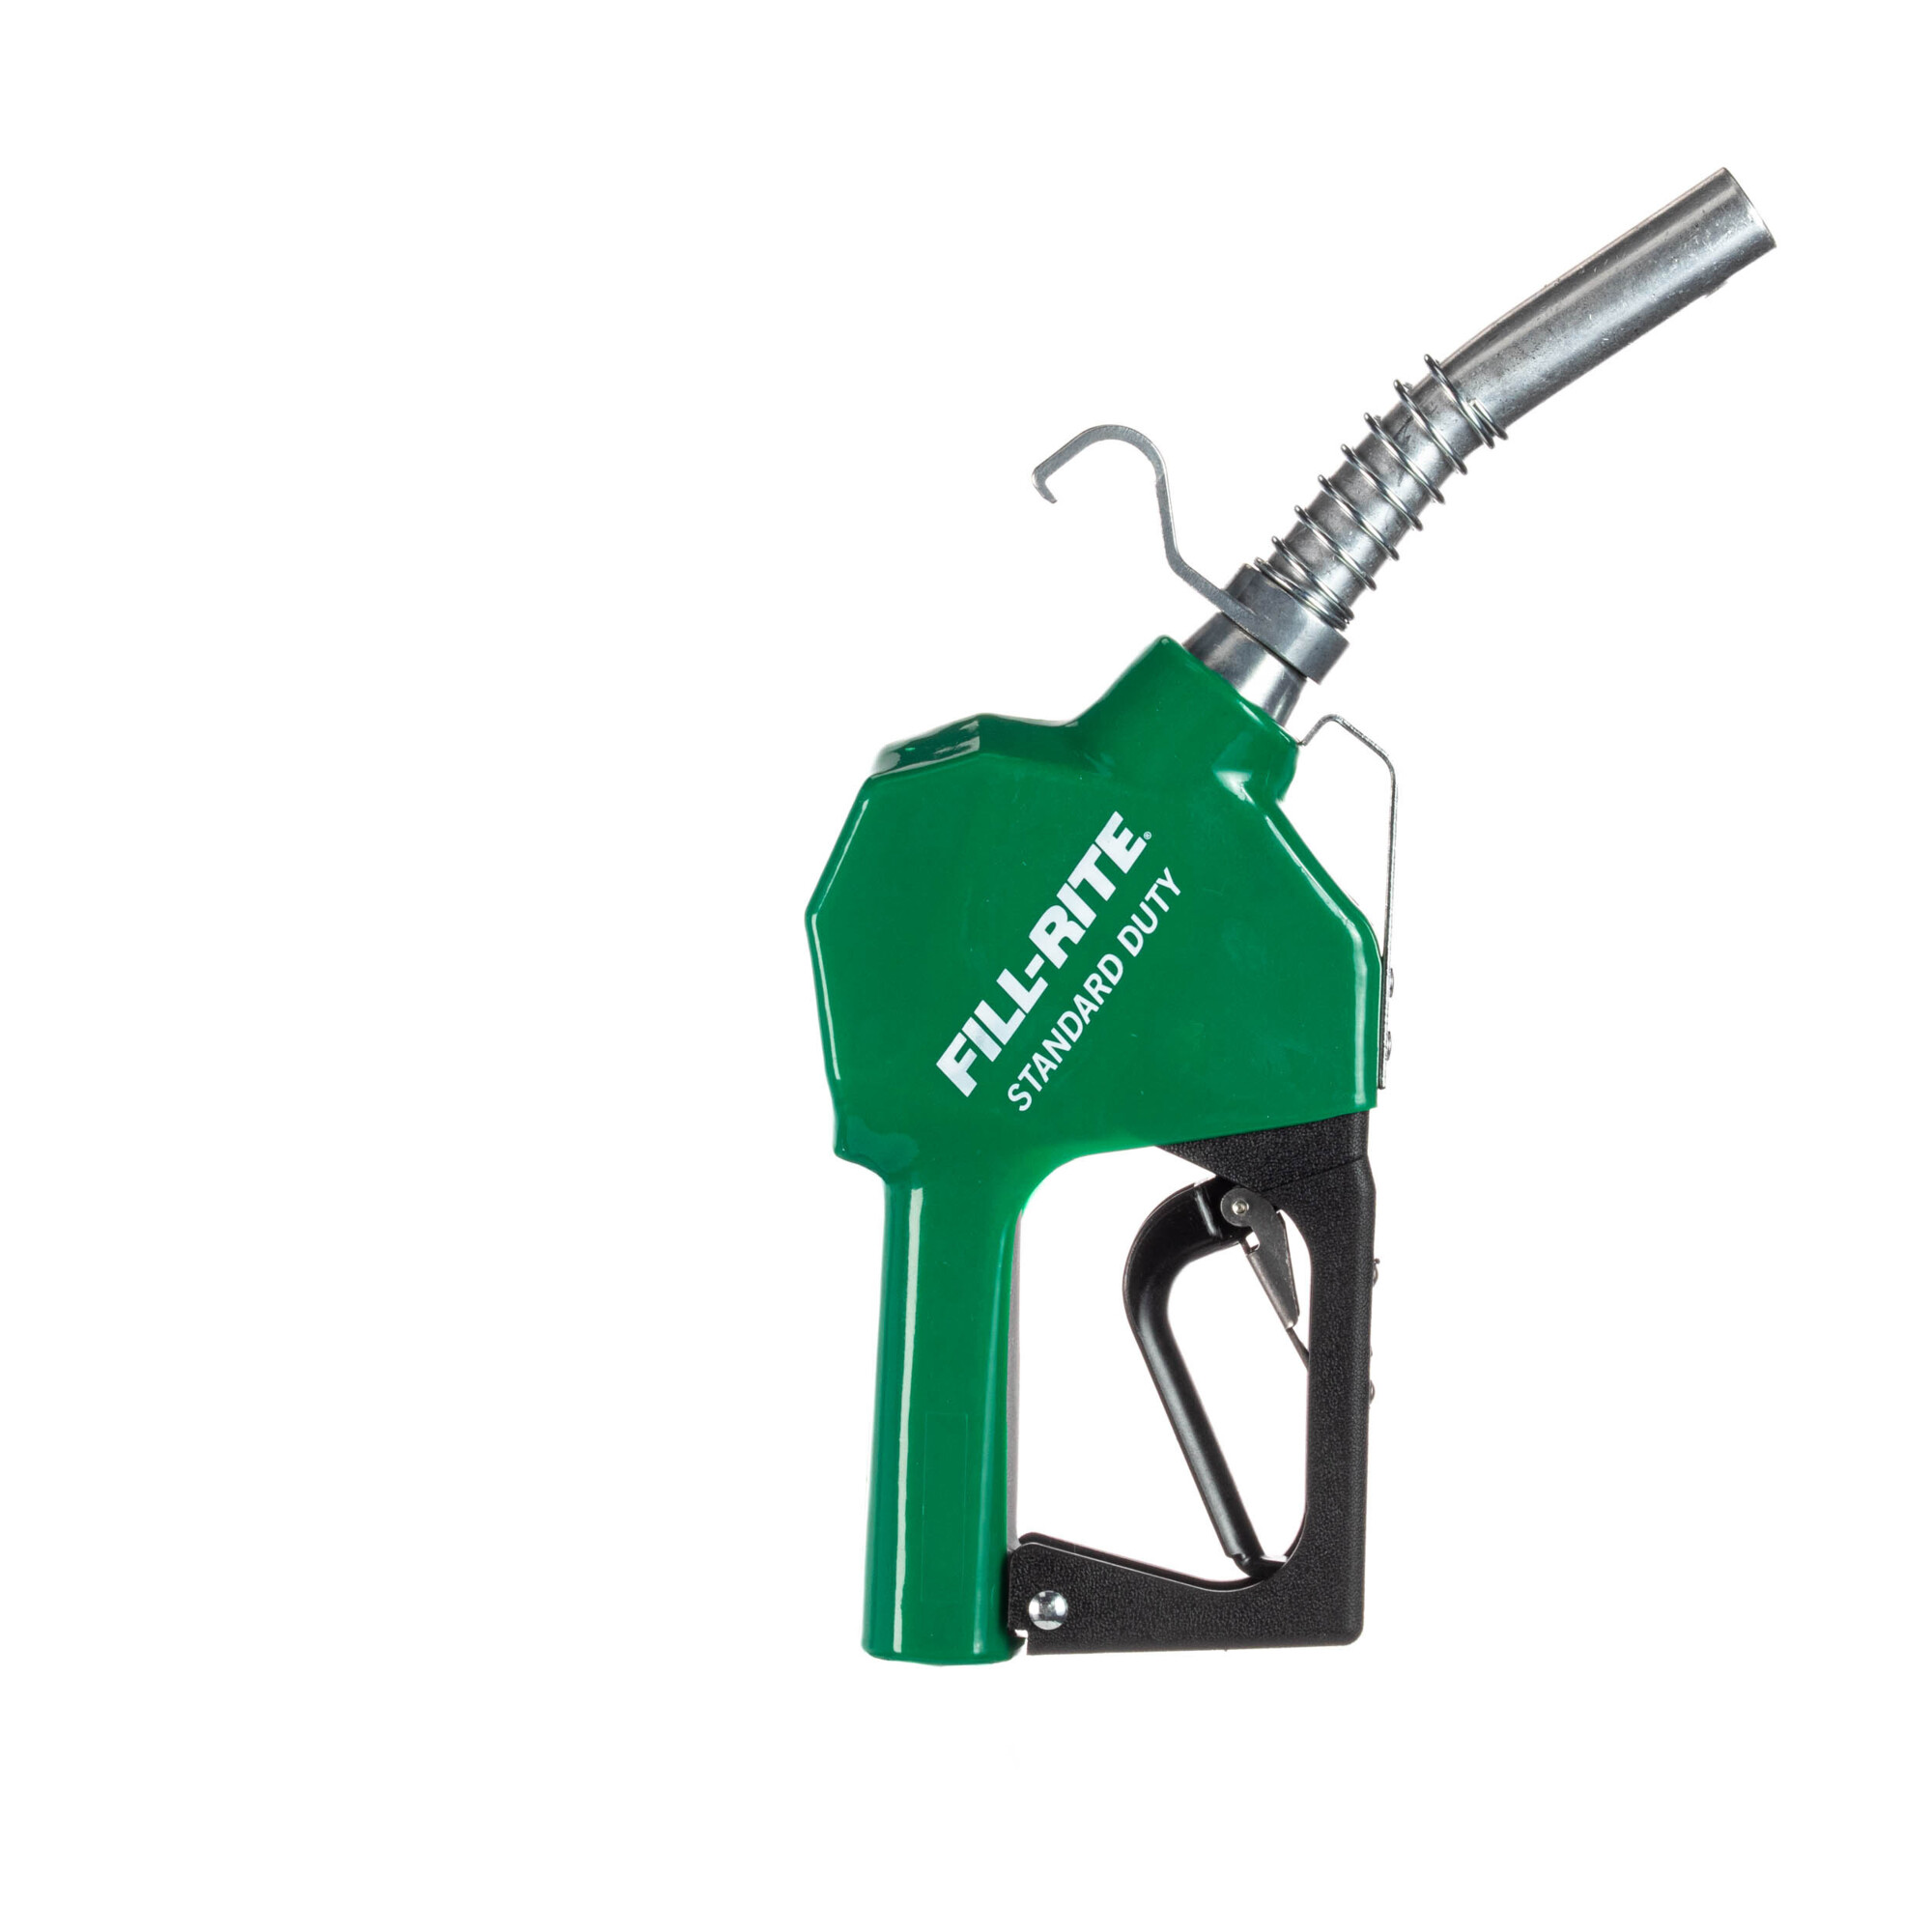 Fill-Rite Automatic Standard-Duty Fuel Nozzle â 3/4Inch NPT, Diesel Spout, Green Boot, Model SDN075GAN